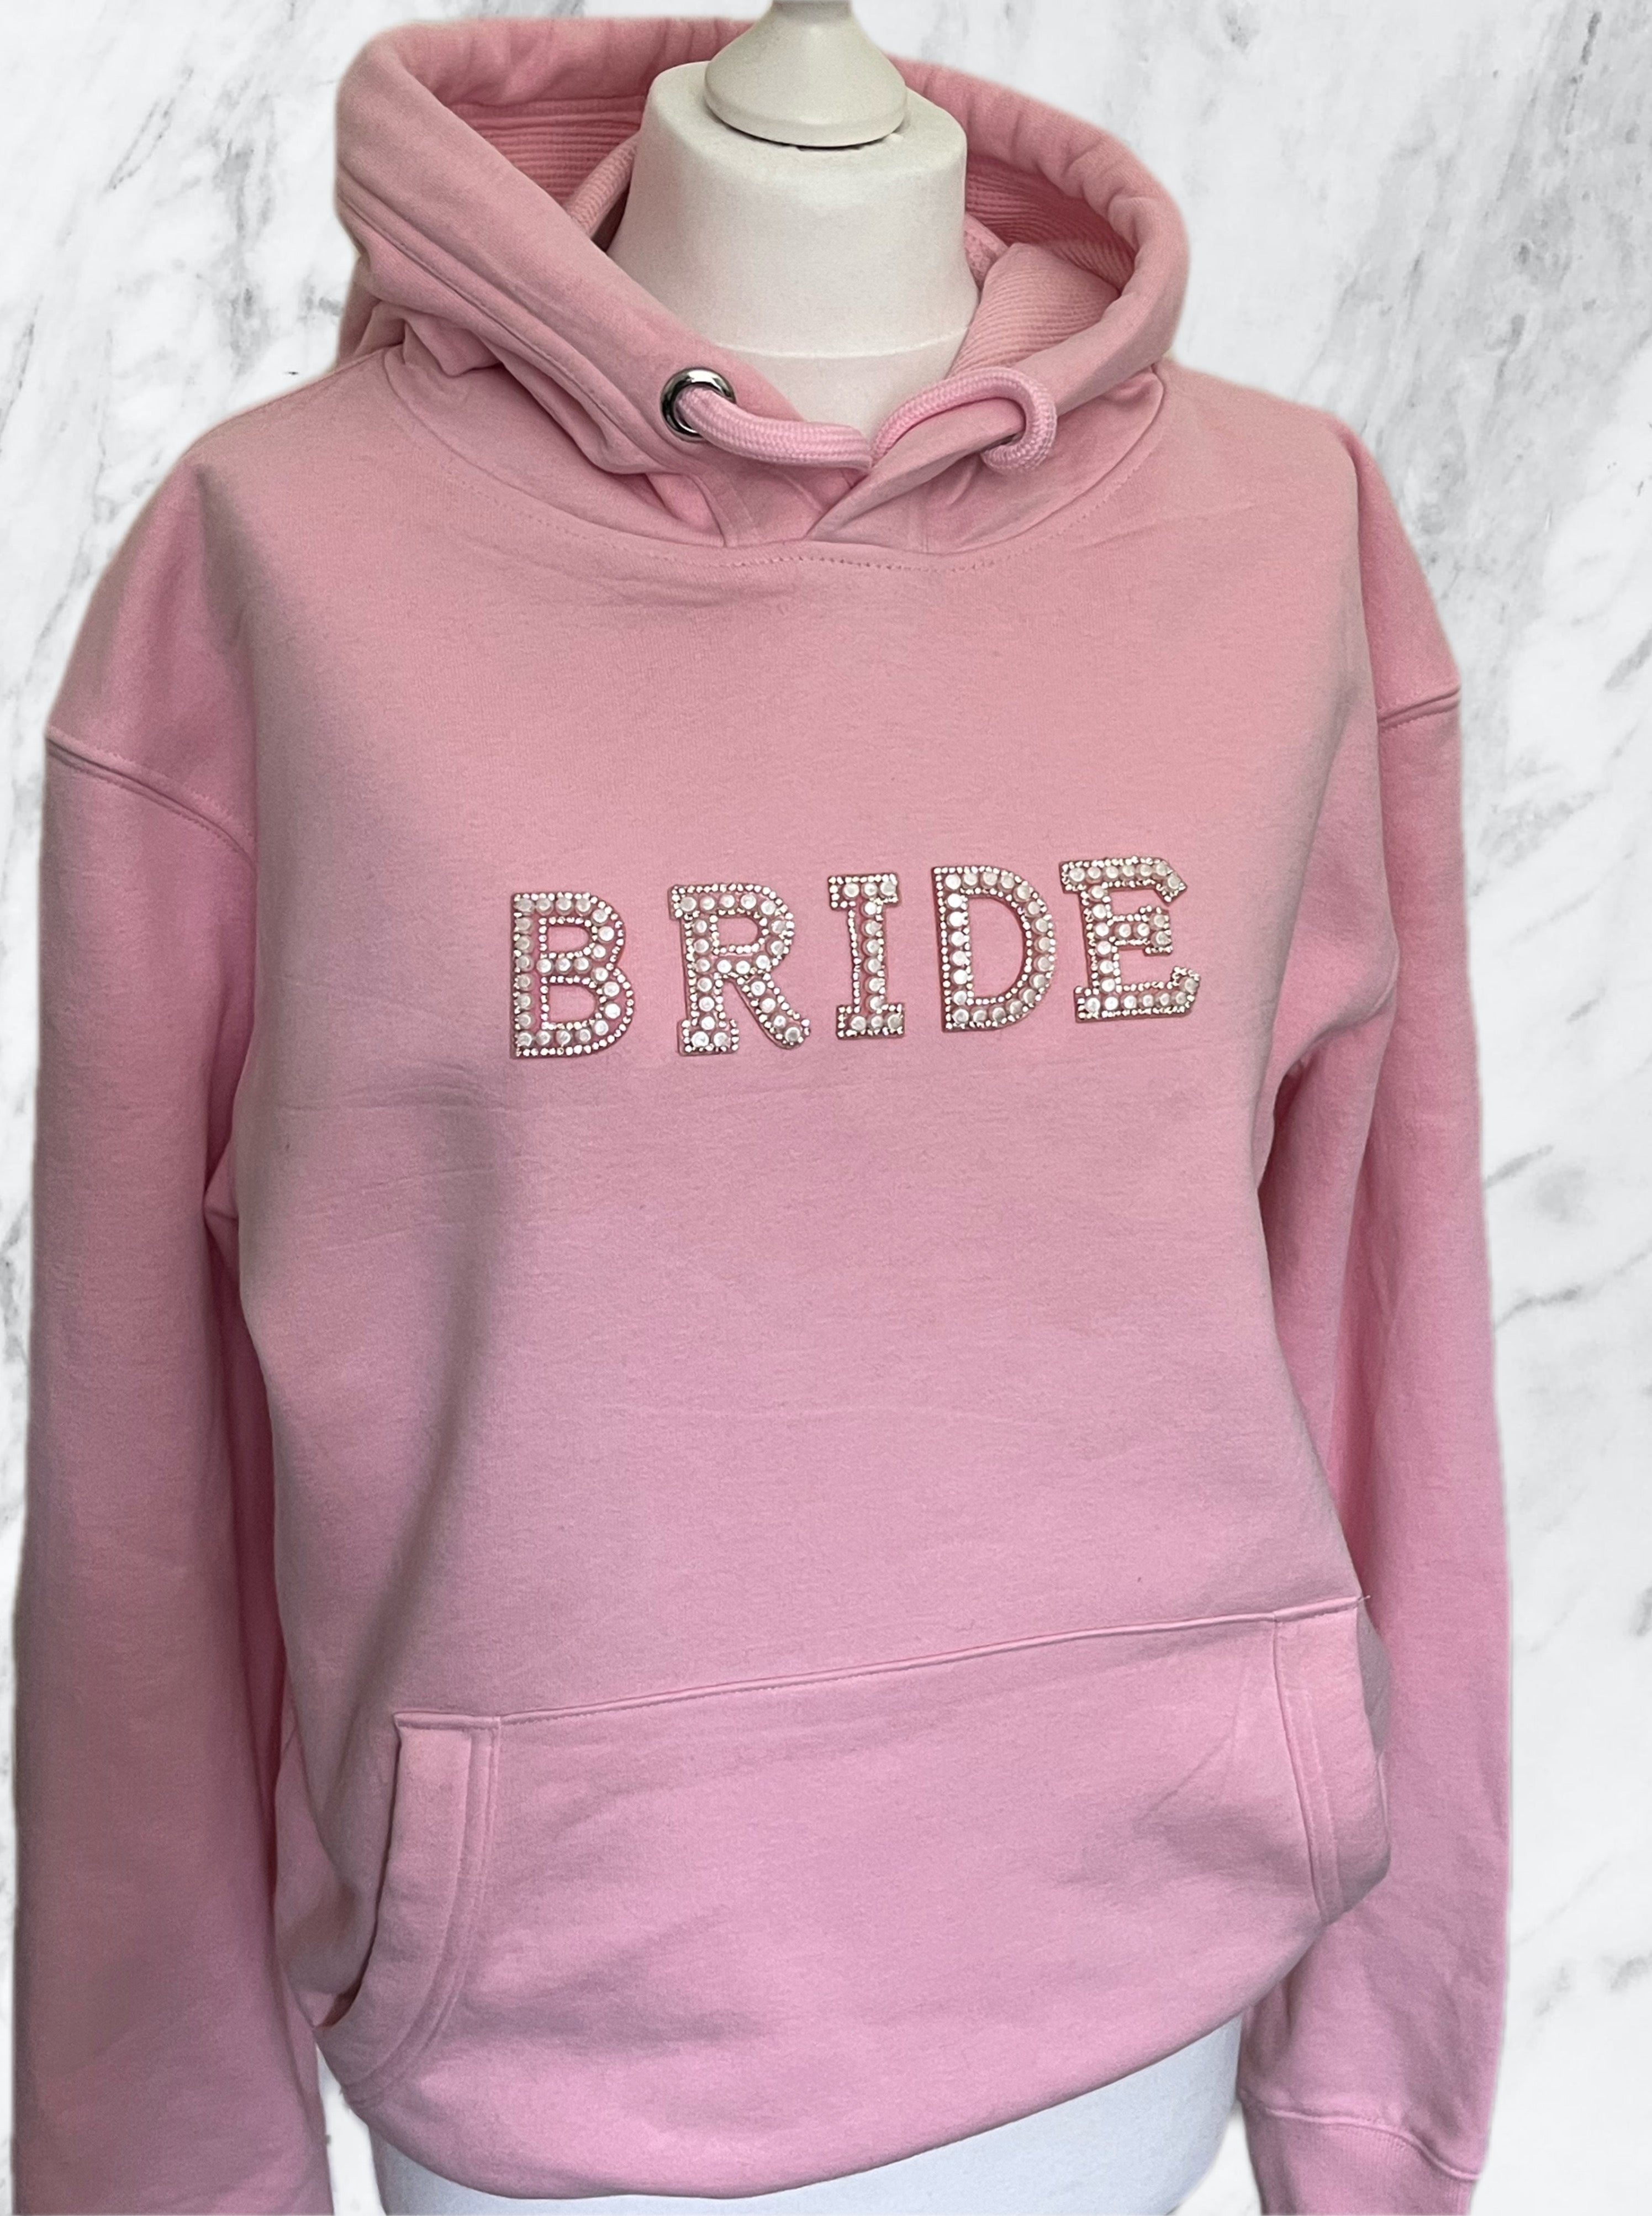 Bride Hoody Pink or White | Phoenix